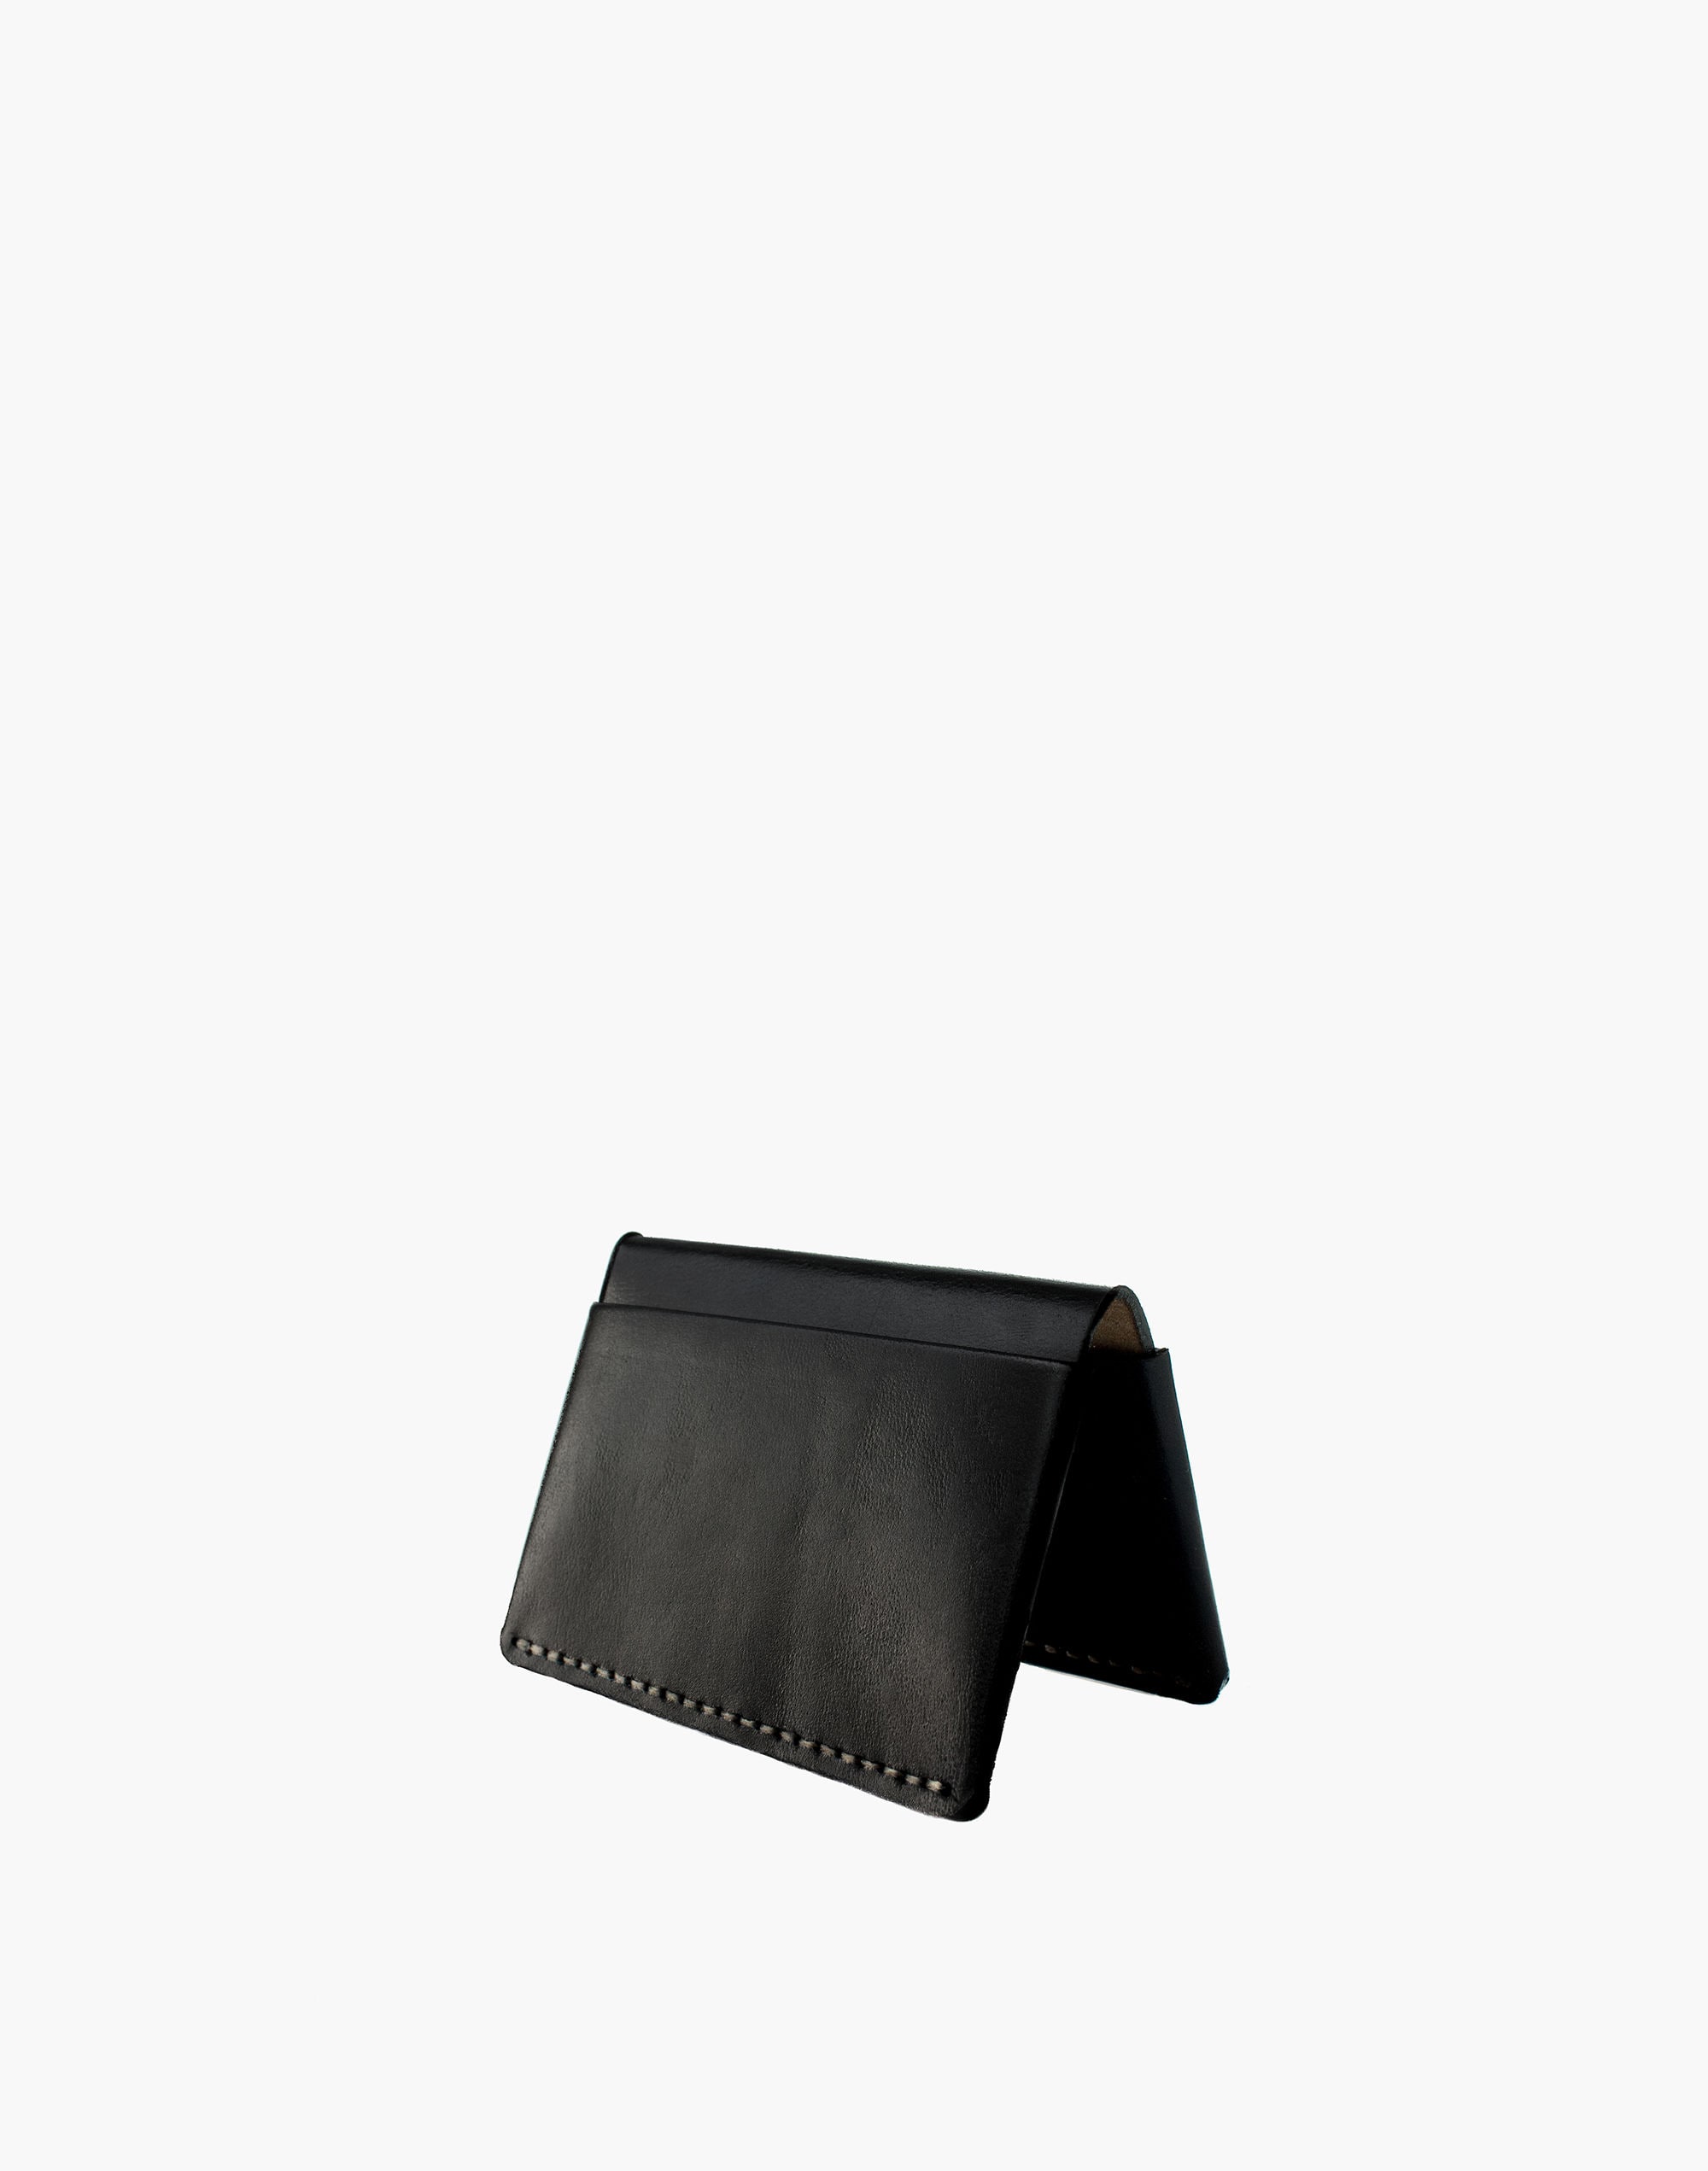 MAKR Leather Horizon Four Wallet